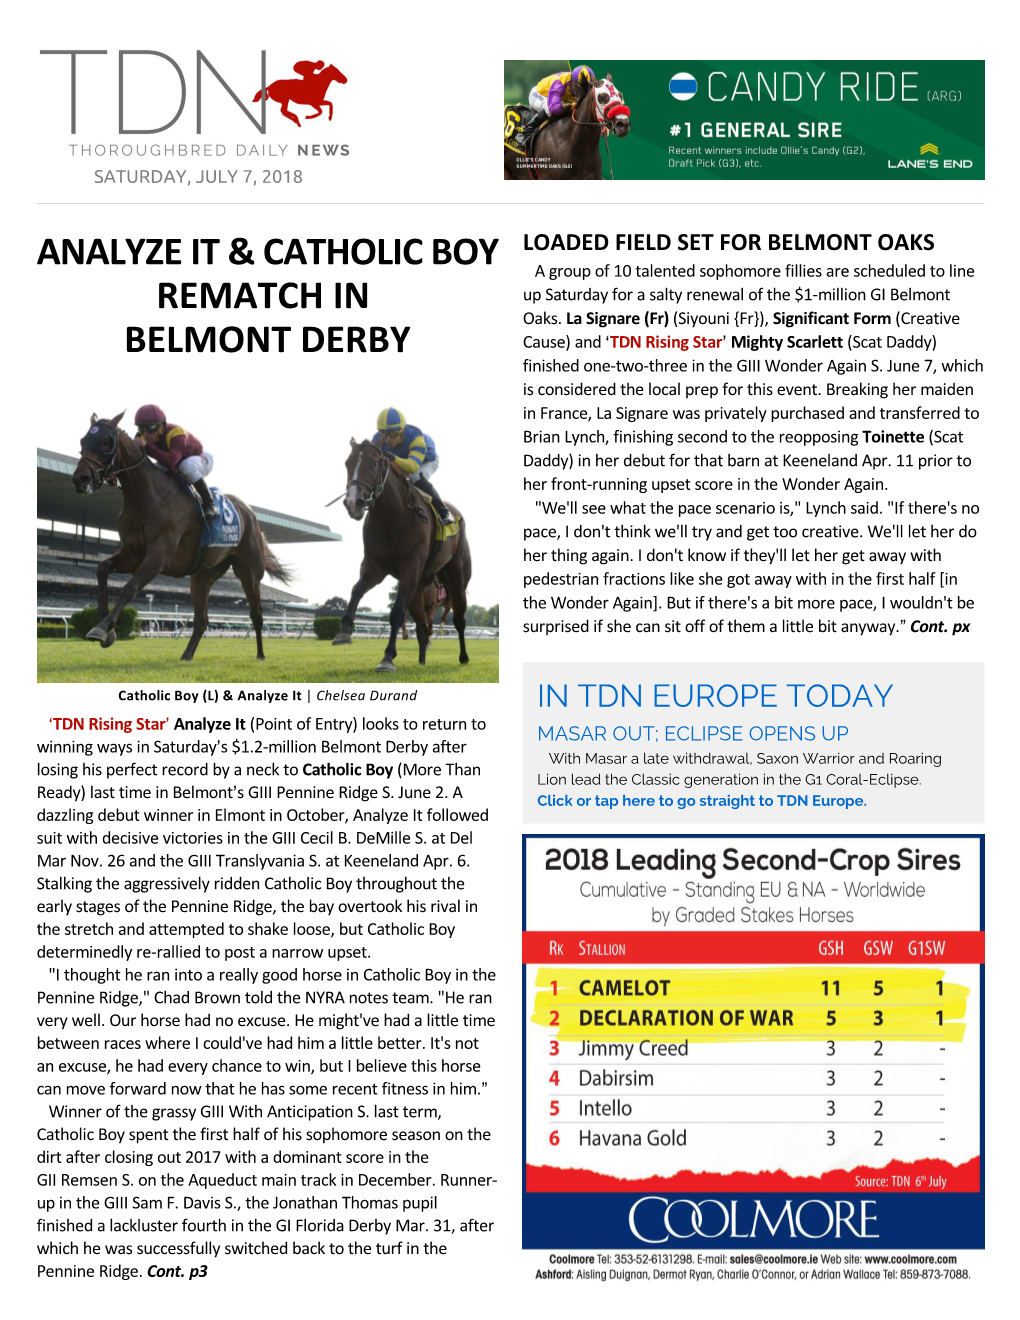 Analyze It & Catholic Boy Rematch in Belmont Derby